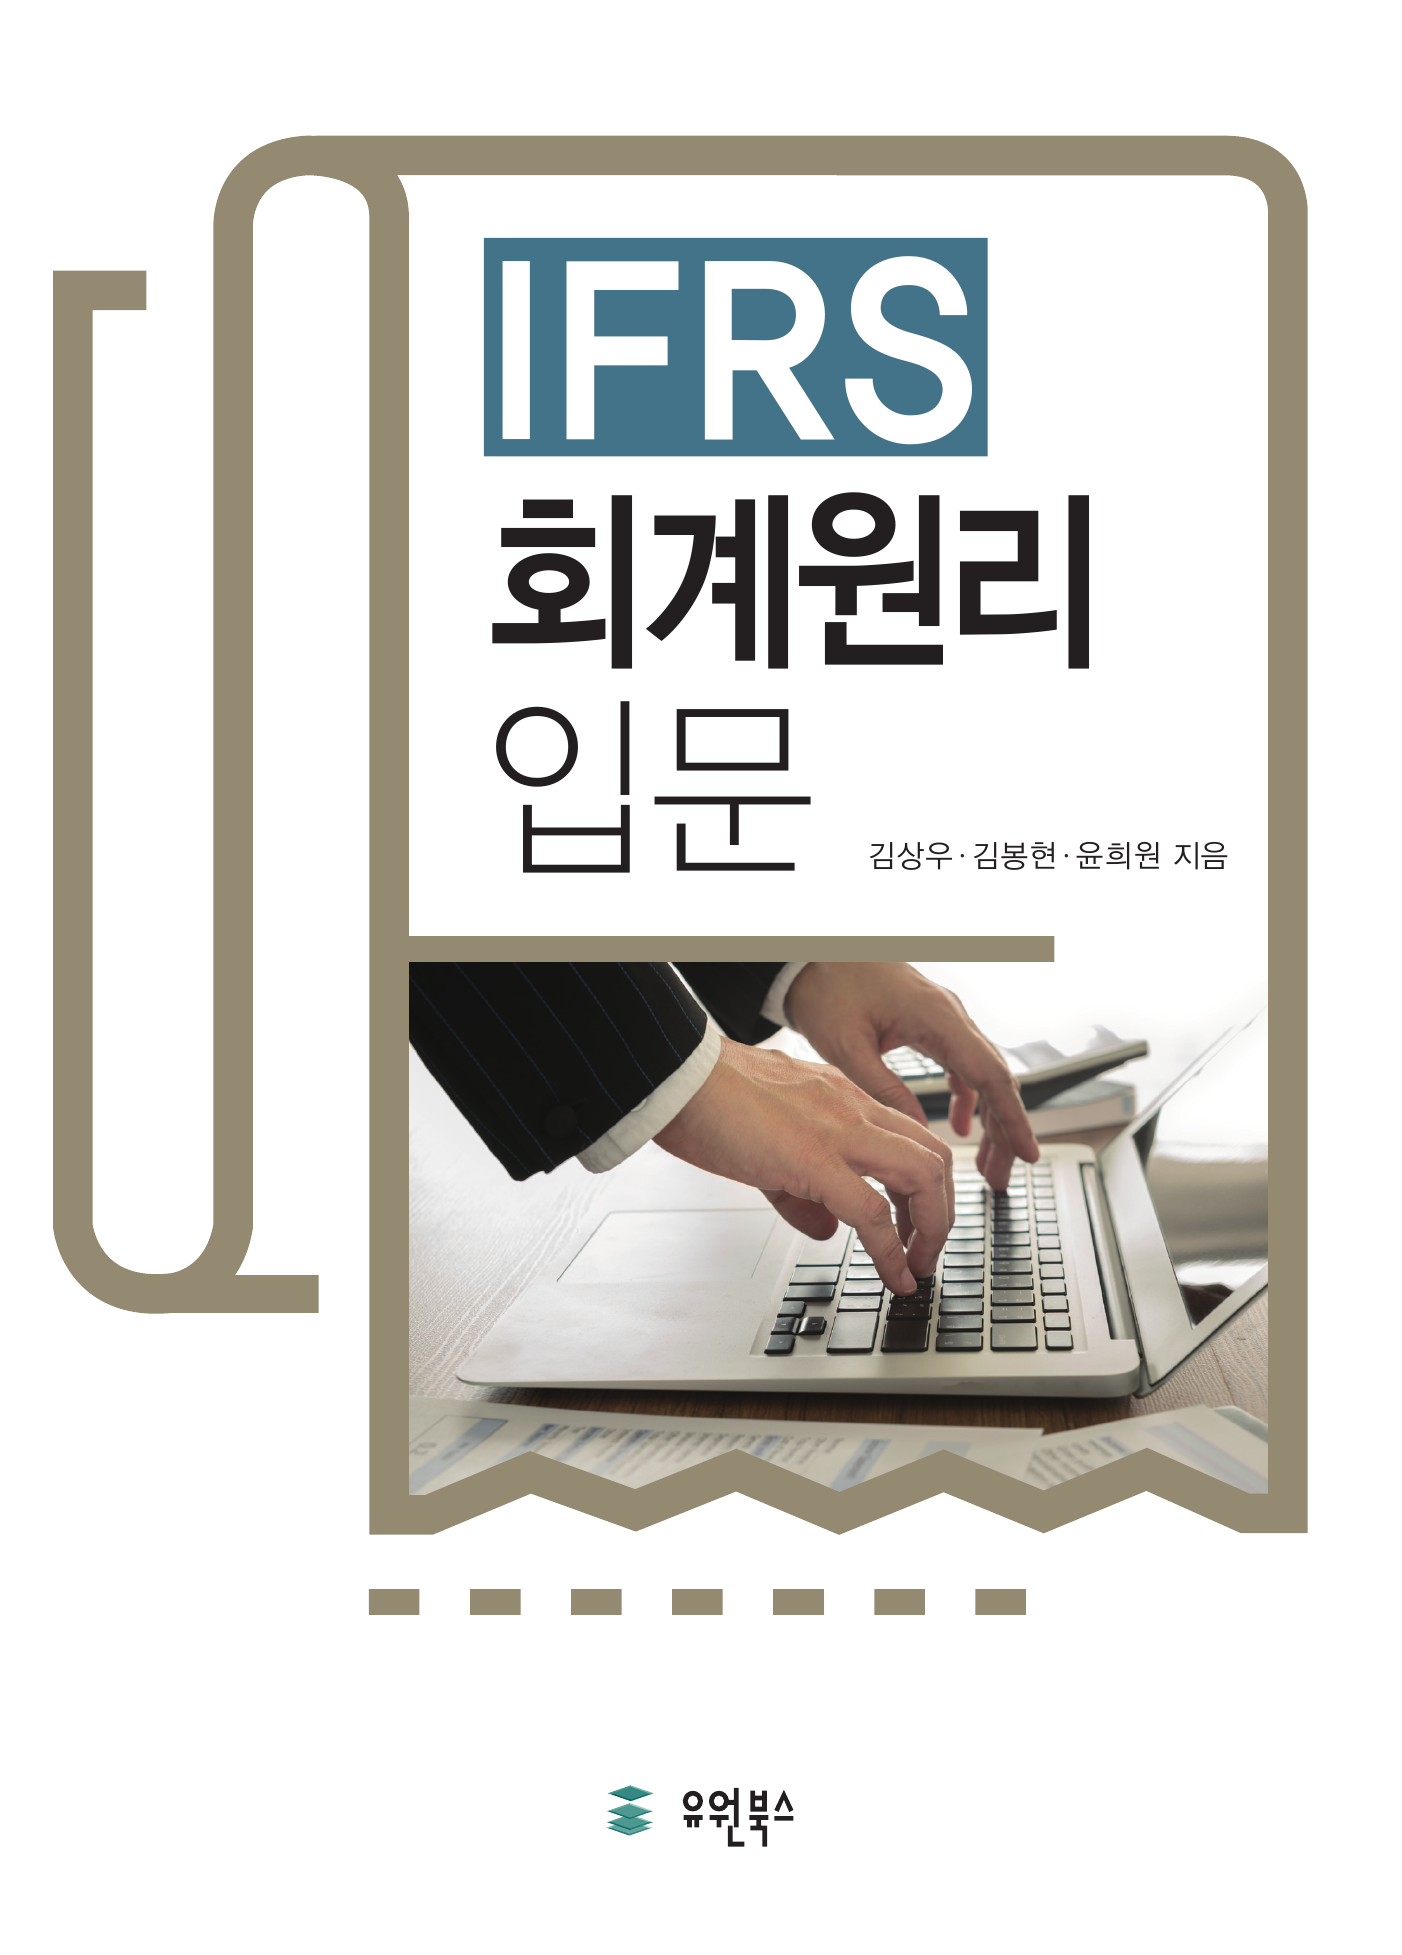 IFRS 회계원리 입문